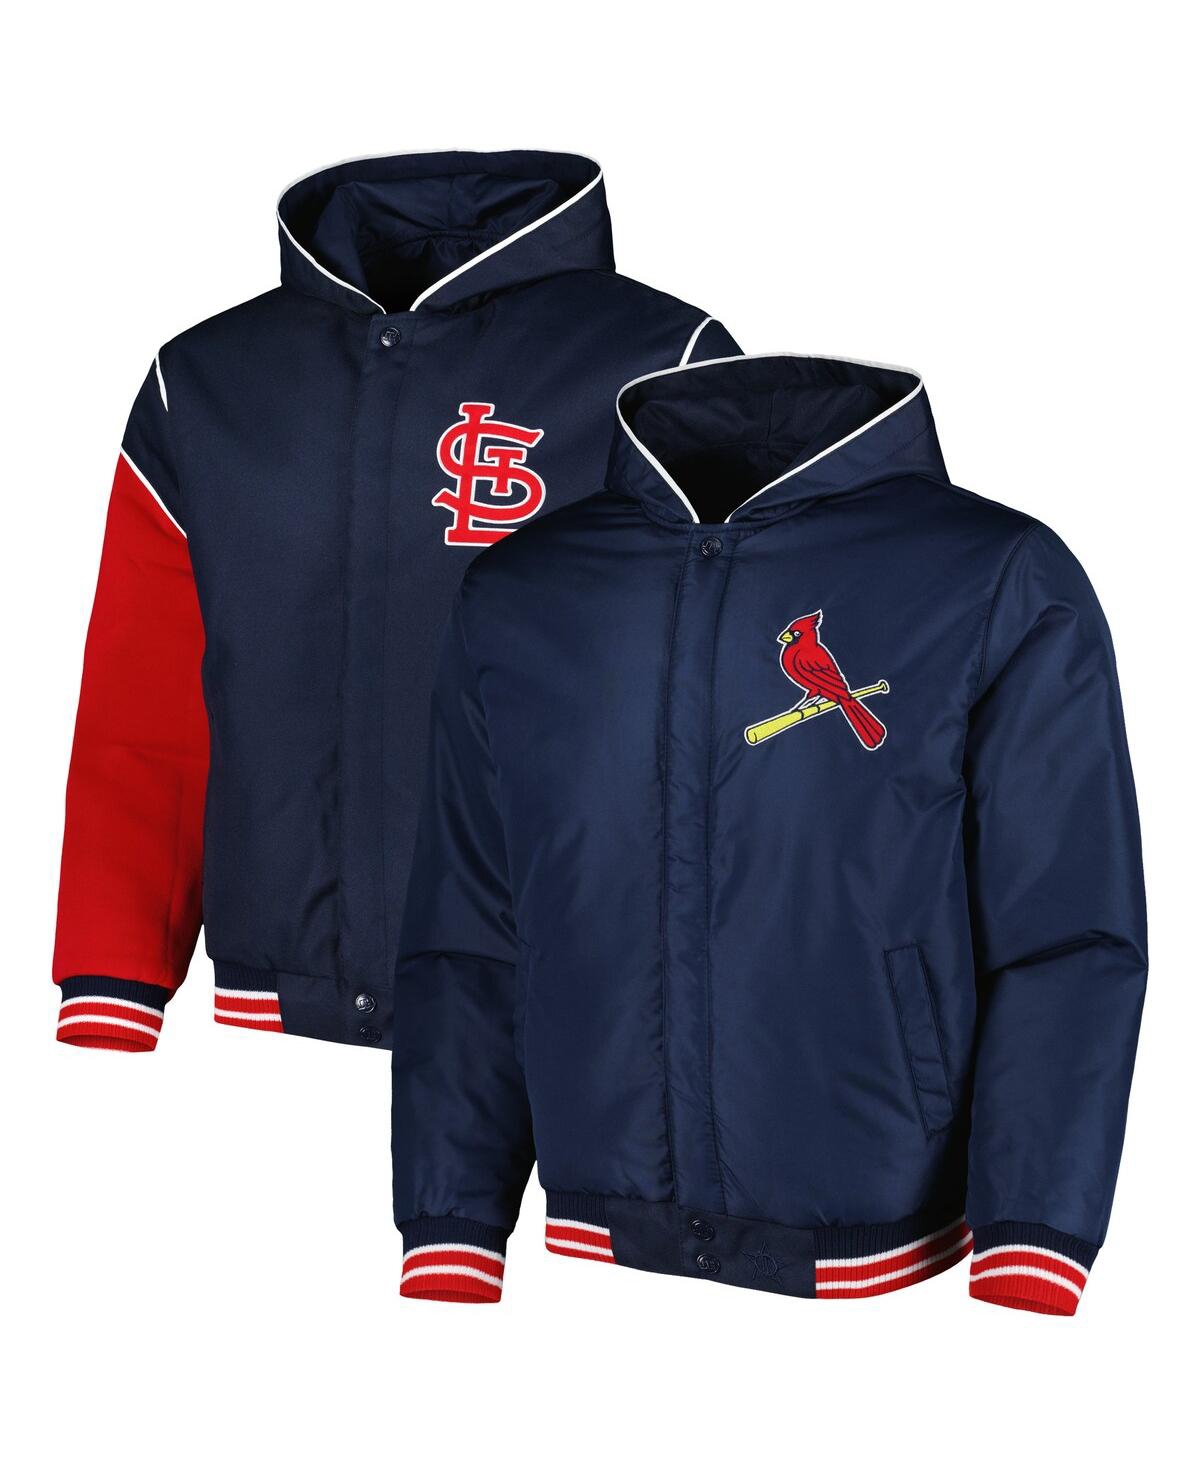 Men's Jh Design Navy St. Louis Cardinals Reversible Fleece Full-Snap Hoodie Jacket - Navy